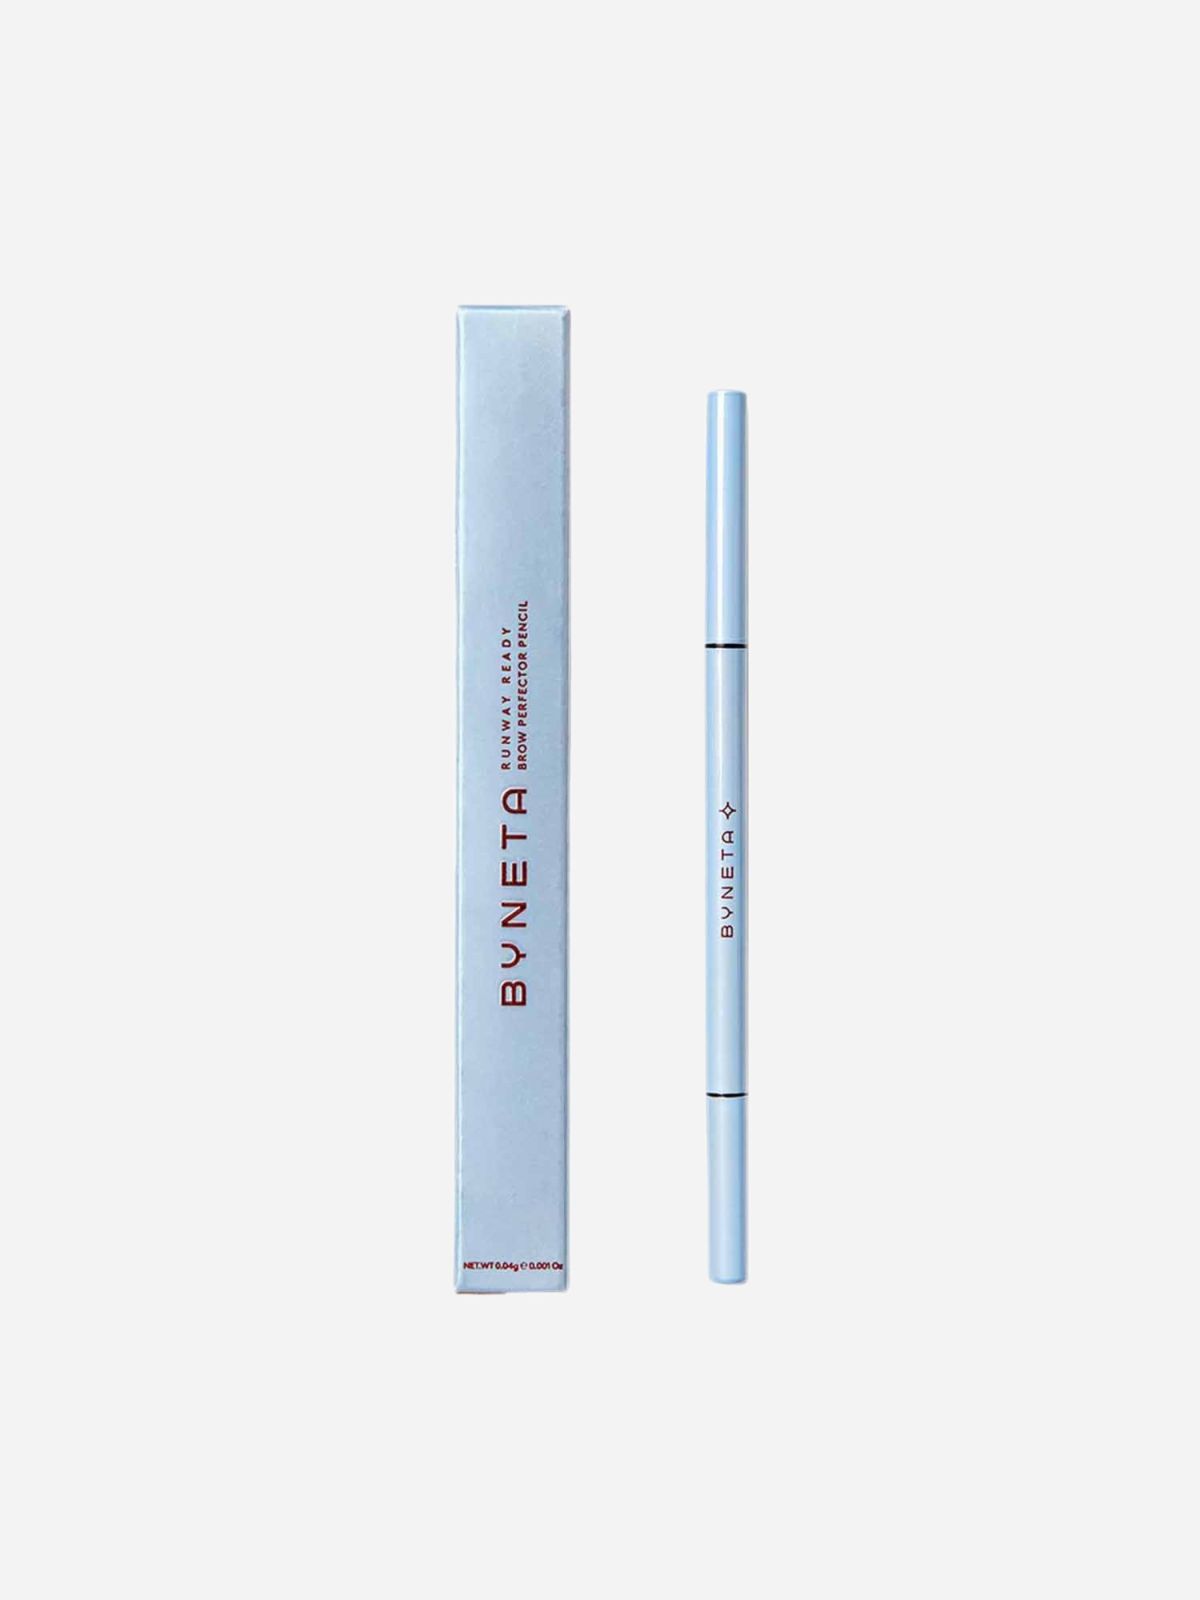  עיפרון גבות מוקה BYNETA- RUNWAY READY-Mocca brow Perfector pencil של BYNETA